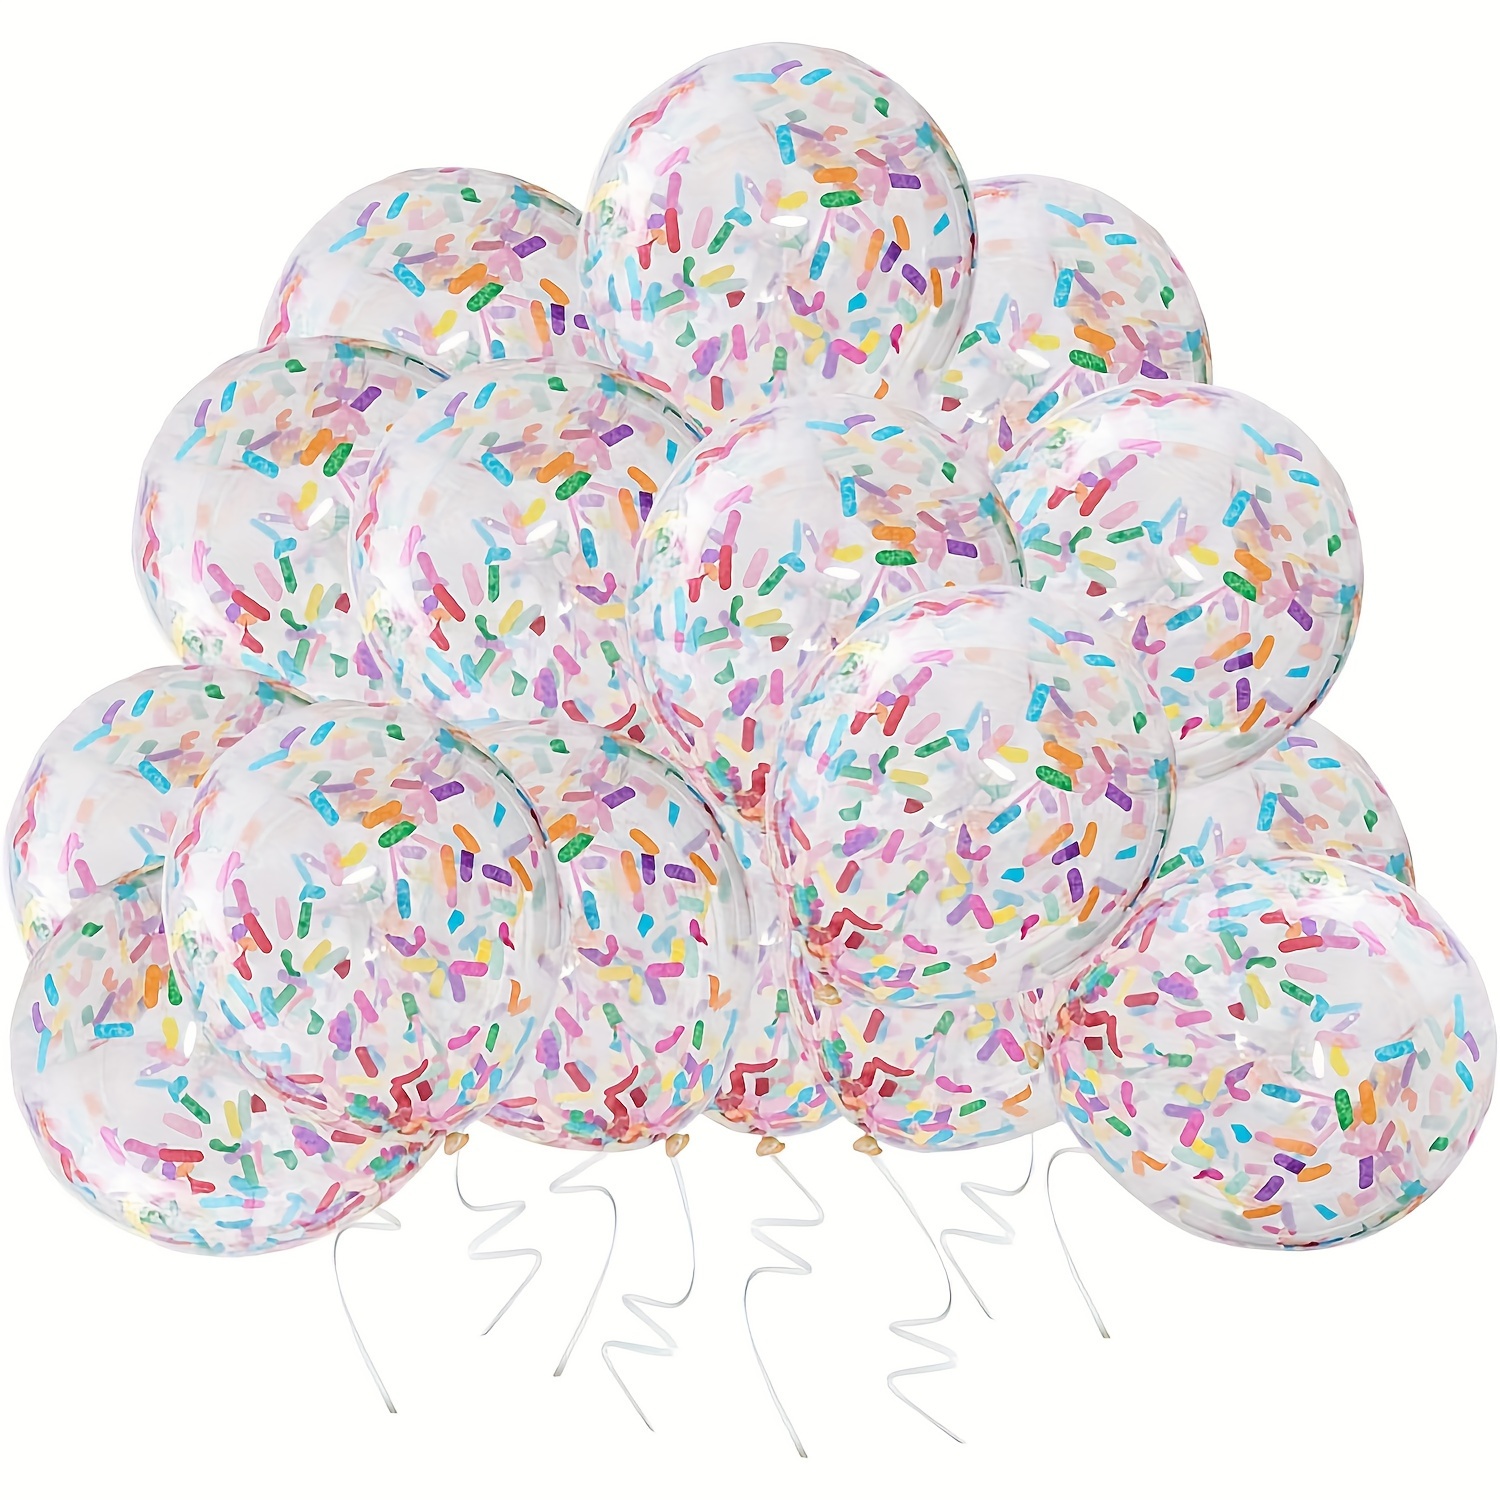 Ballons Confettis en Latex Or Noir pour Homme et Femme, Décorations de  ixd'Anniversaire, Remise de Diplôme, Ramadan, Eid Mubarak, 40 Pièces, 12  Pouces